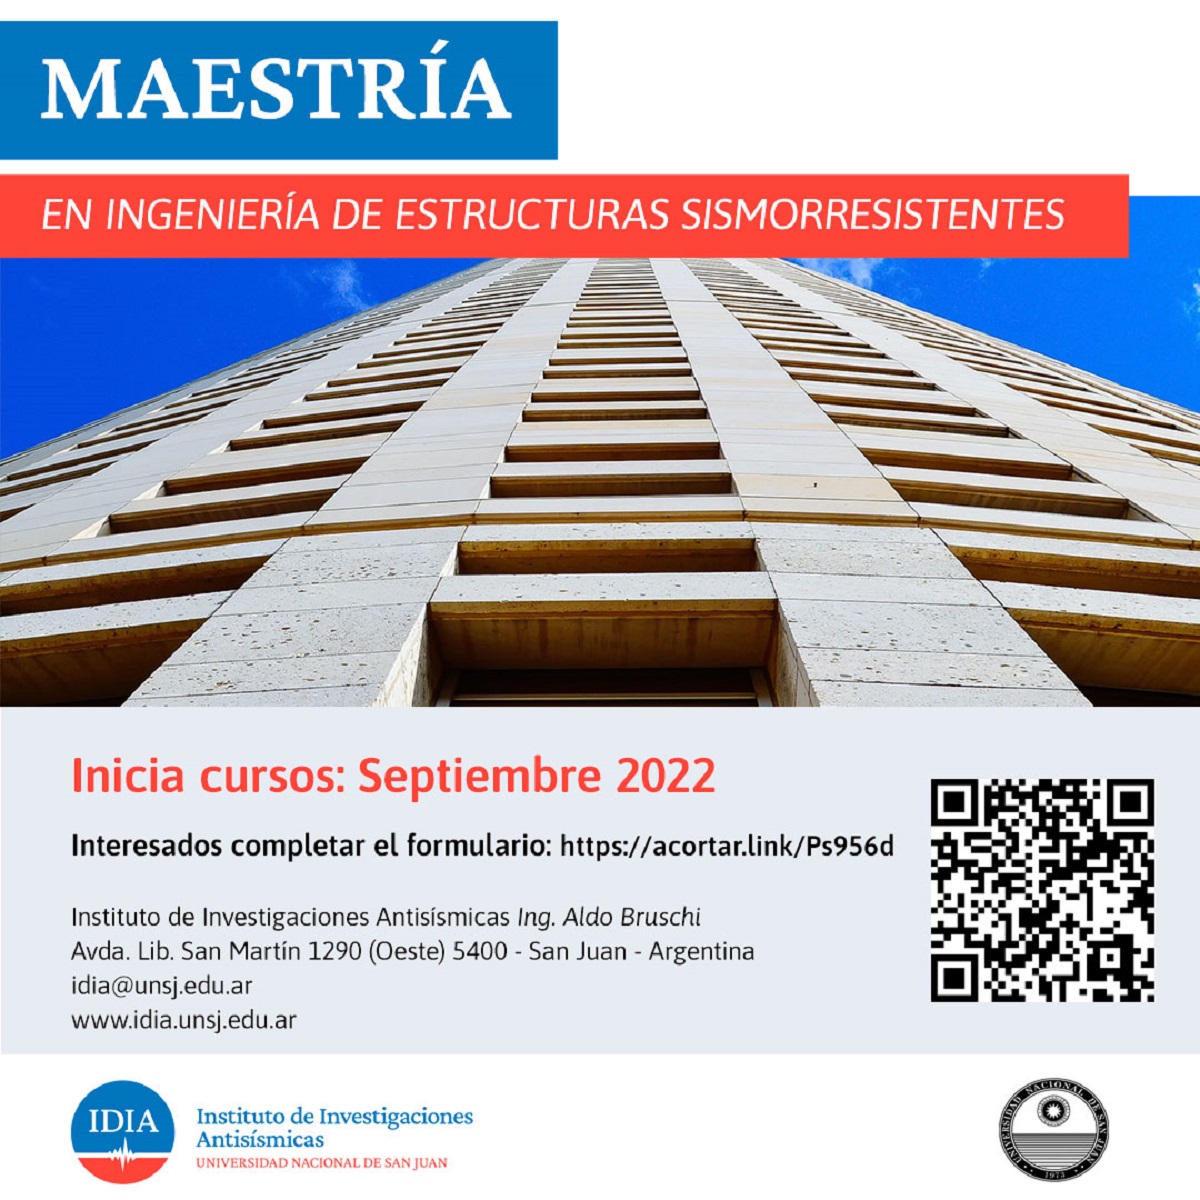 Curso de Posgrado del IDIA: "Maestría en Ingeniería de Estructuras Sismorresistentes"